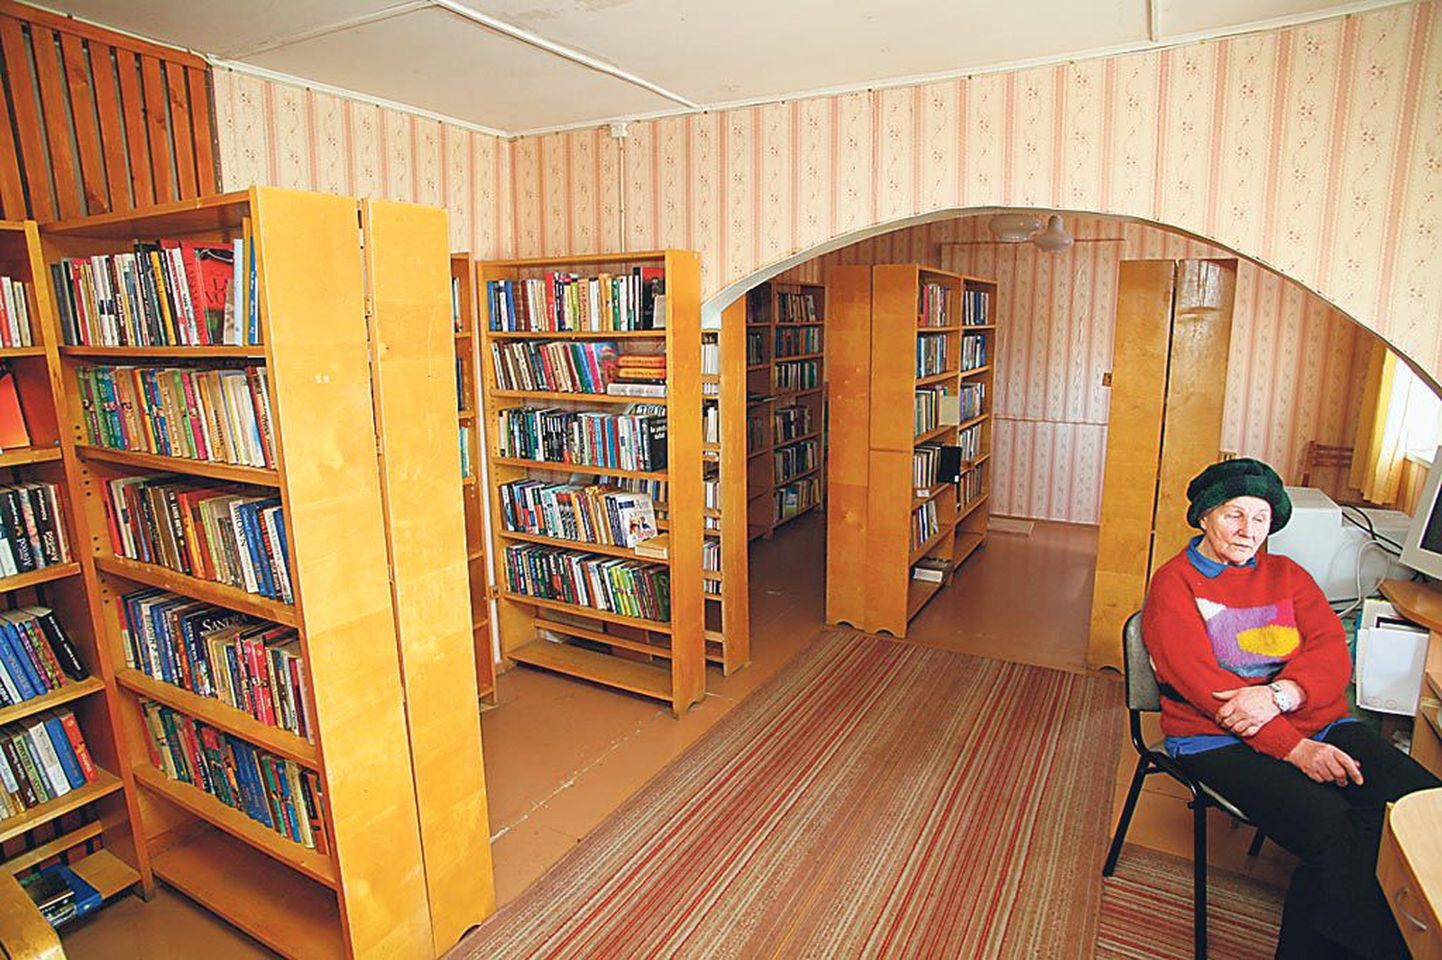 “Tunnen tervet piirkonda, valin raamatud, mis inimesi huvitavad,” mainib Kihlepa raamatukogu juhataja Luule Aomere.